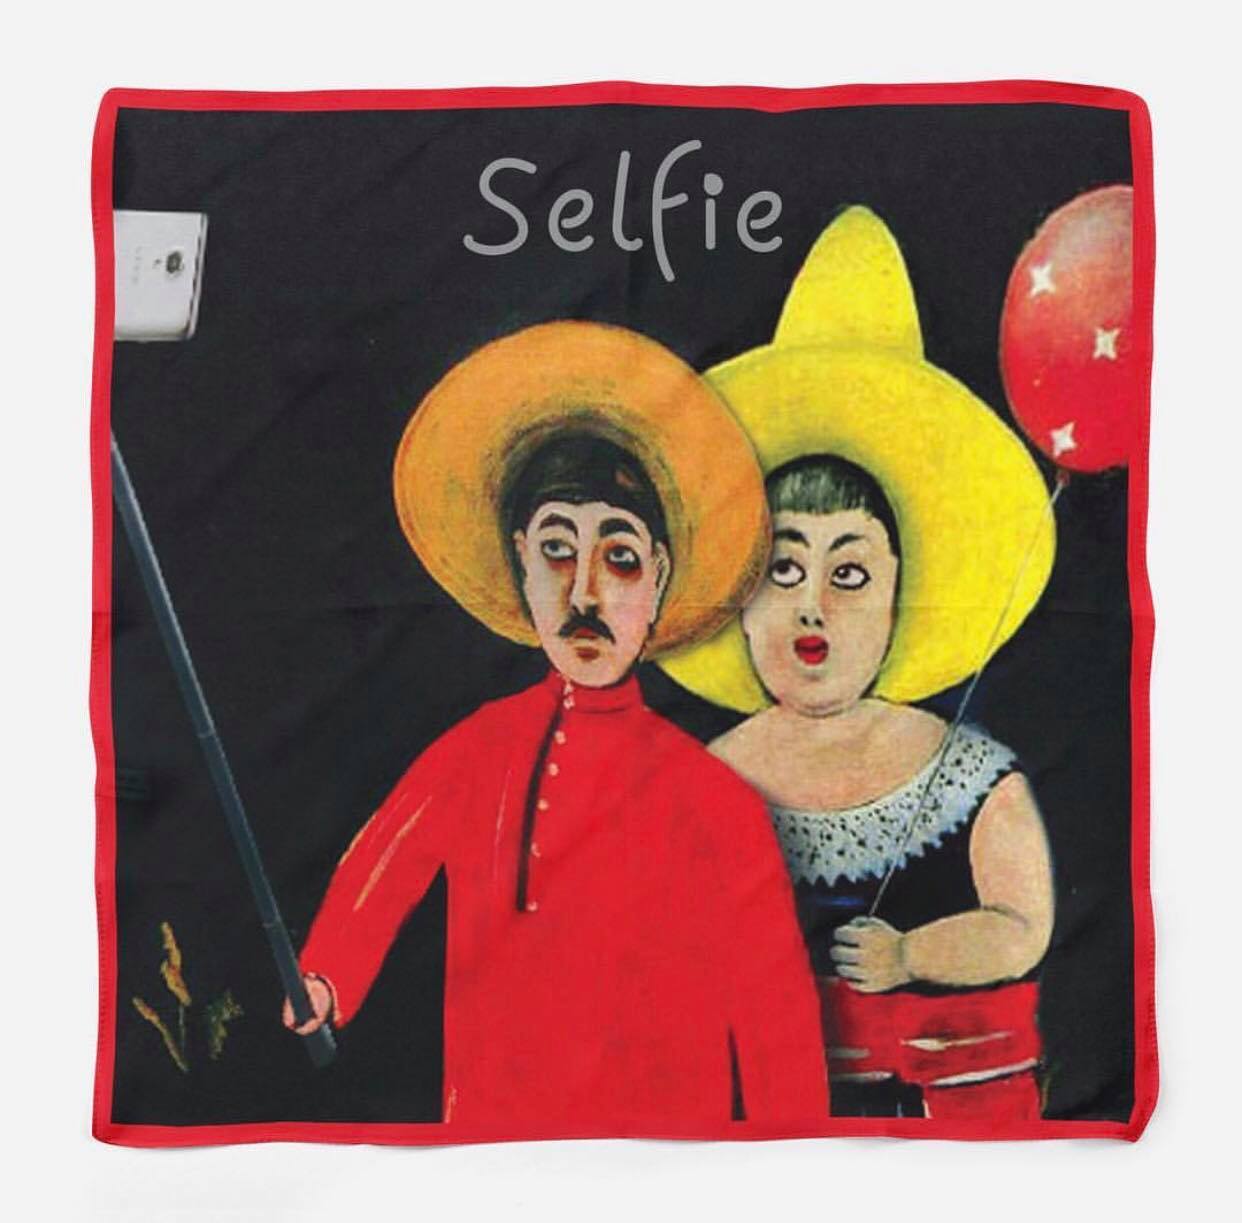 აბრეშუმის შარფი "selfie"